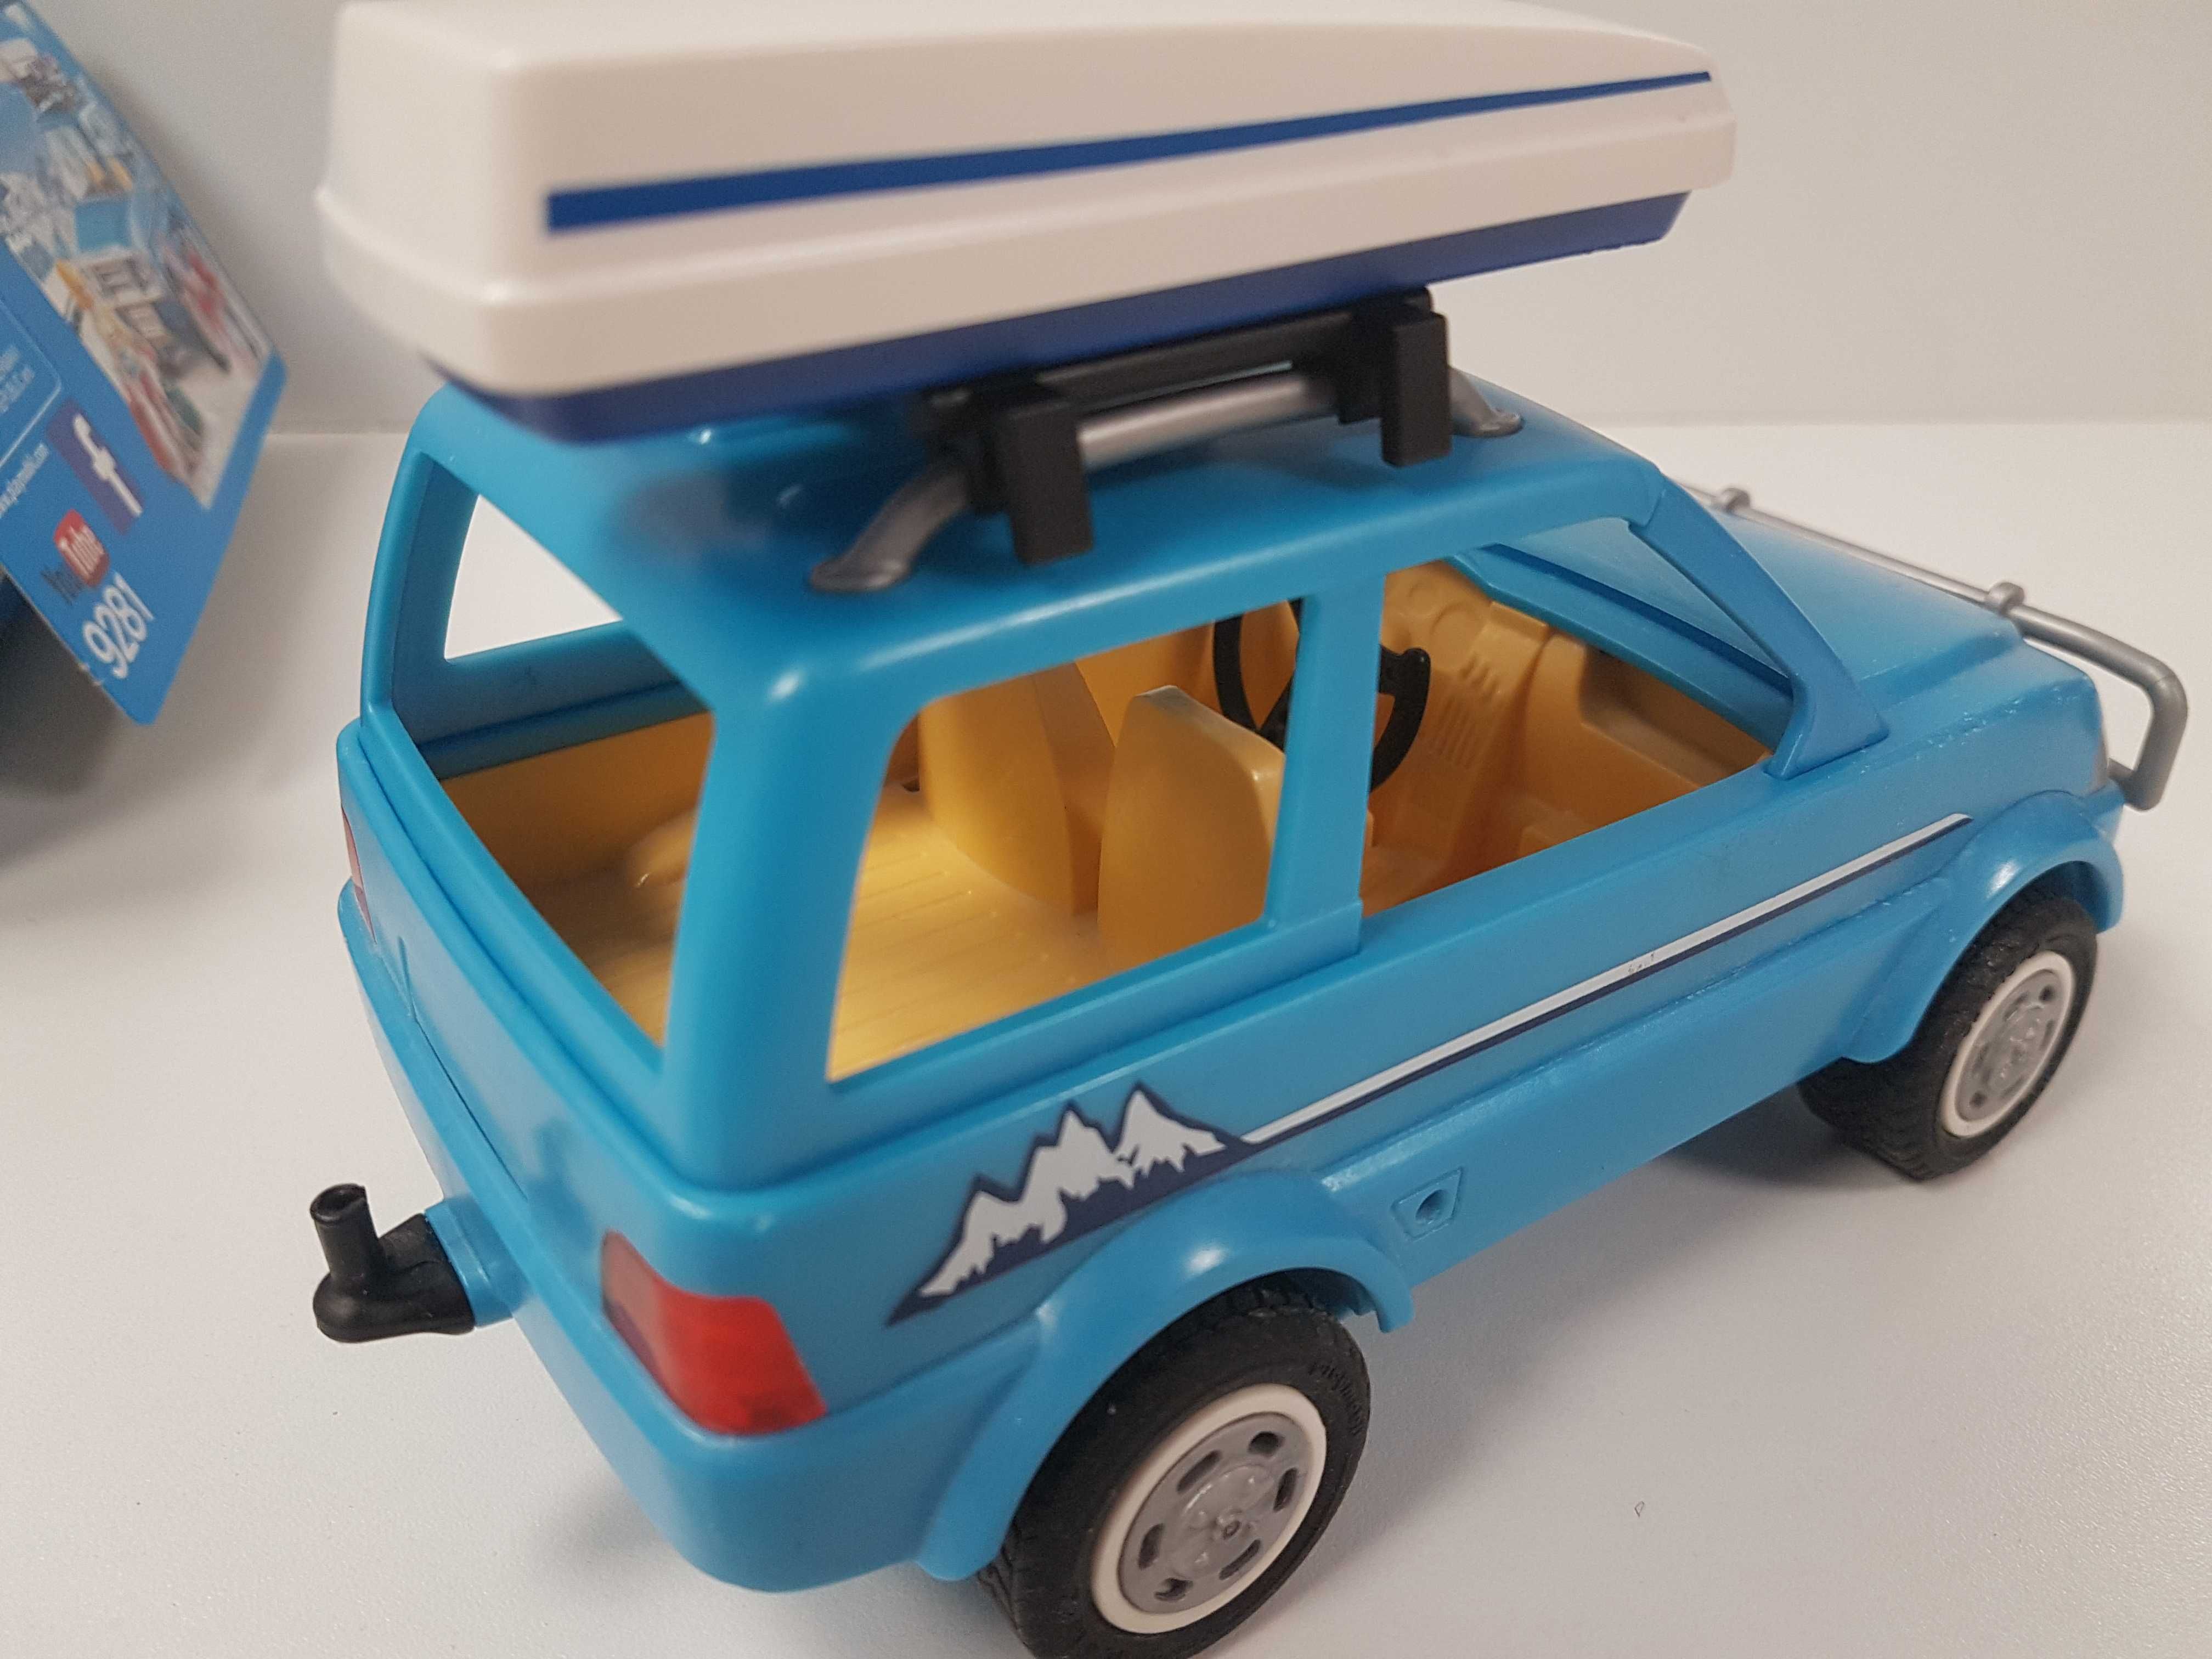 Playmobil 9281 Family Fun Auto z boxem dachowym